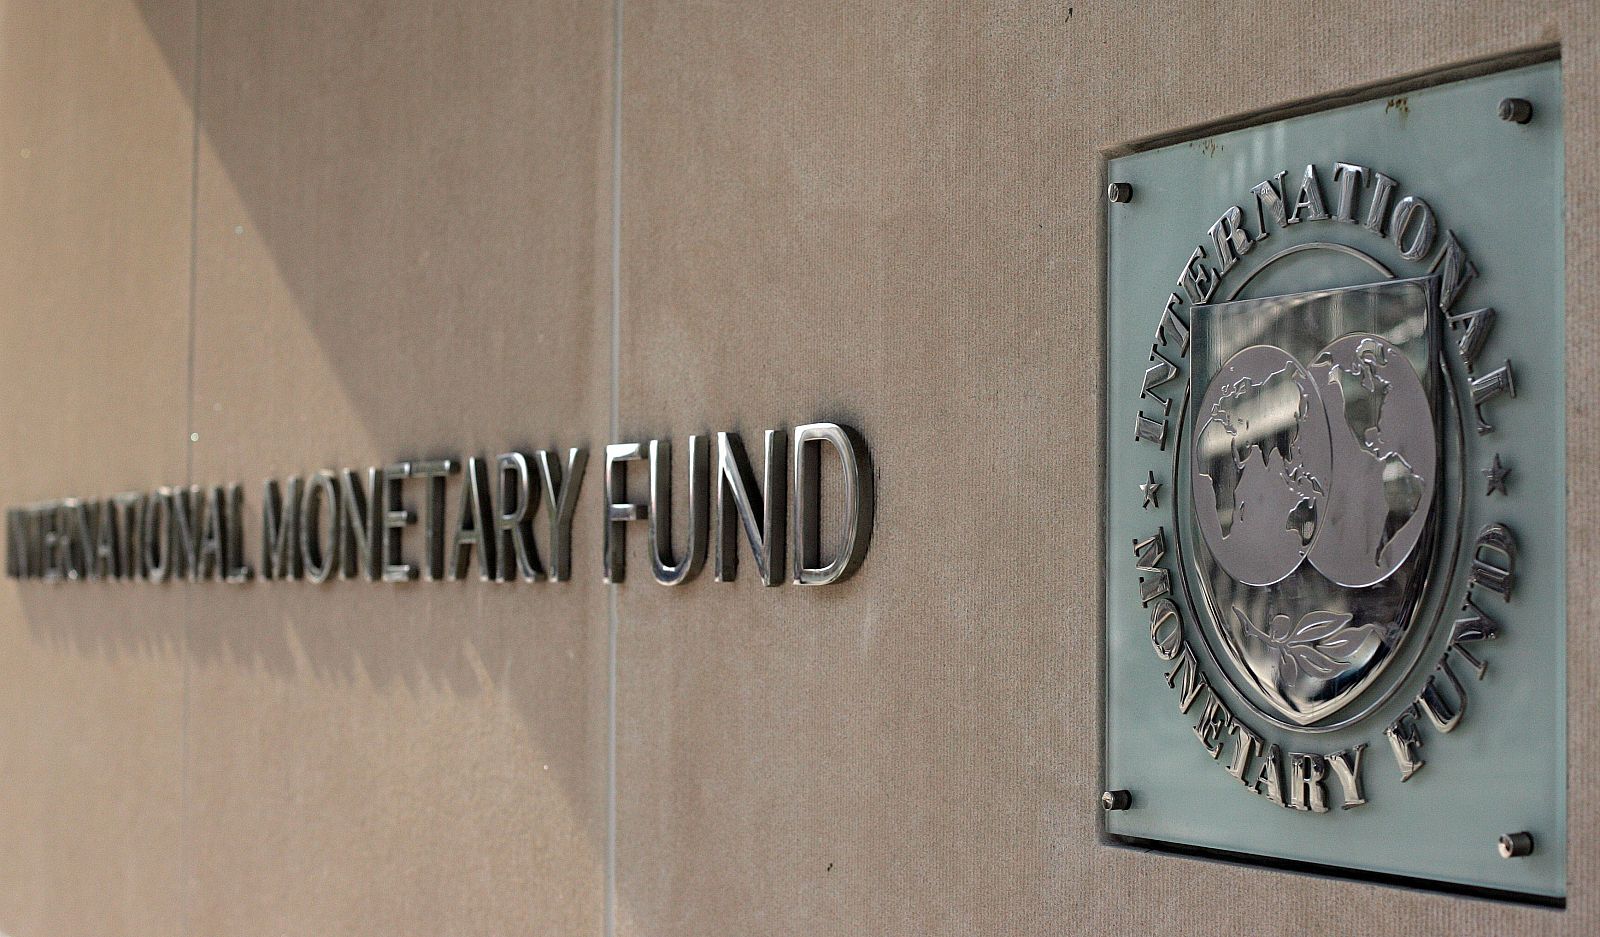 La sede del FMI en Washington